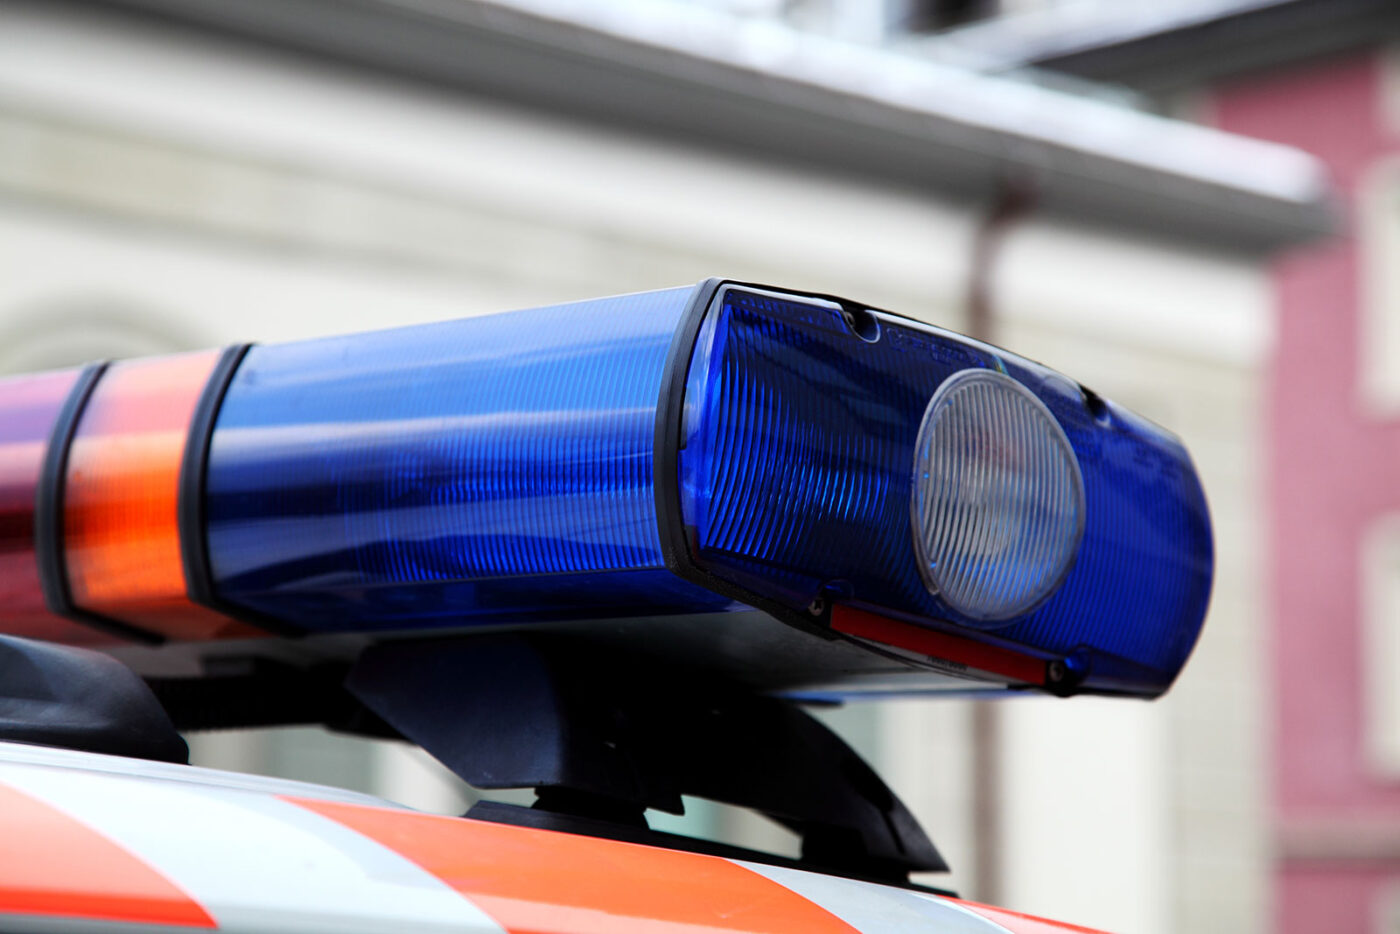 Luzerner Polizei regelt die Öffnungszeiten für Take-aways